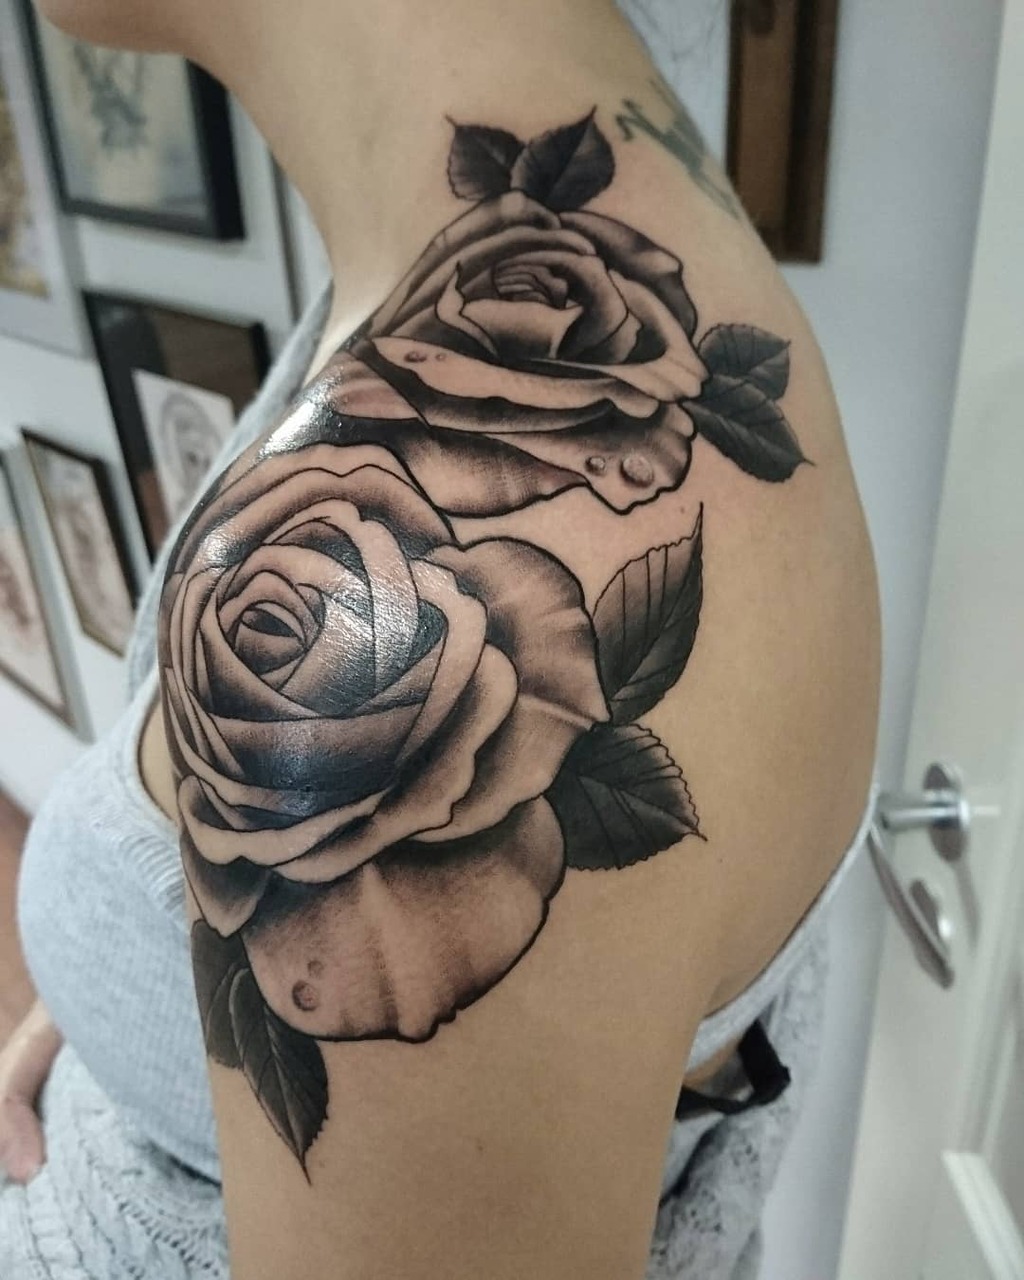 An Arm Rose Tattoo For Women